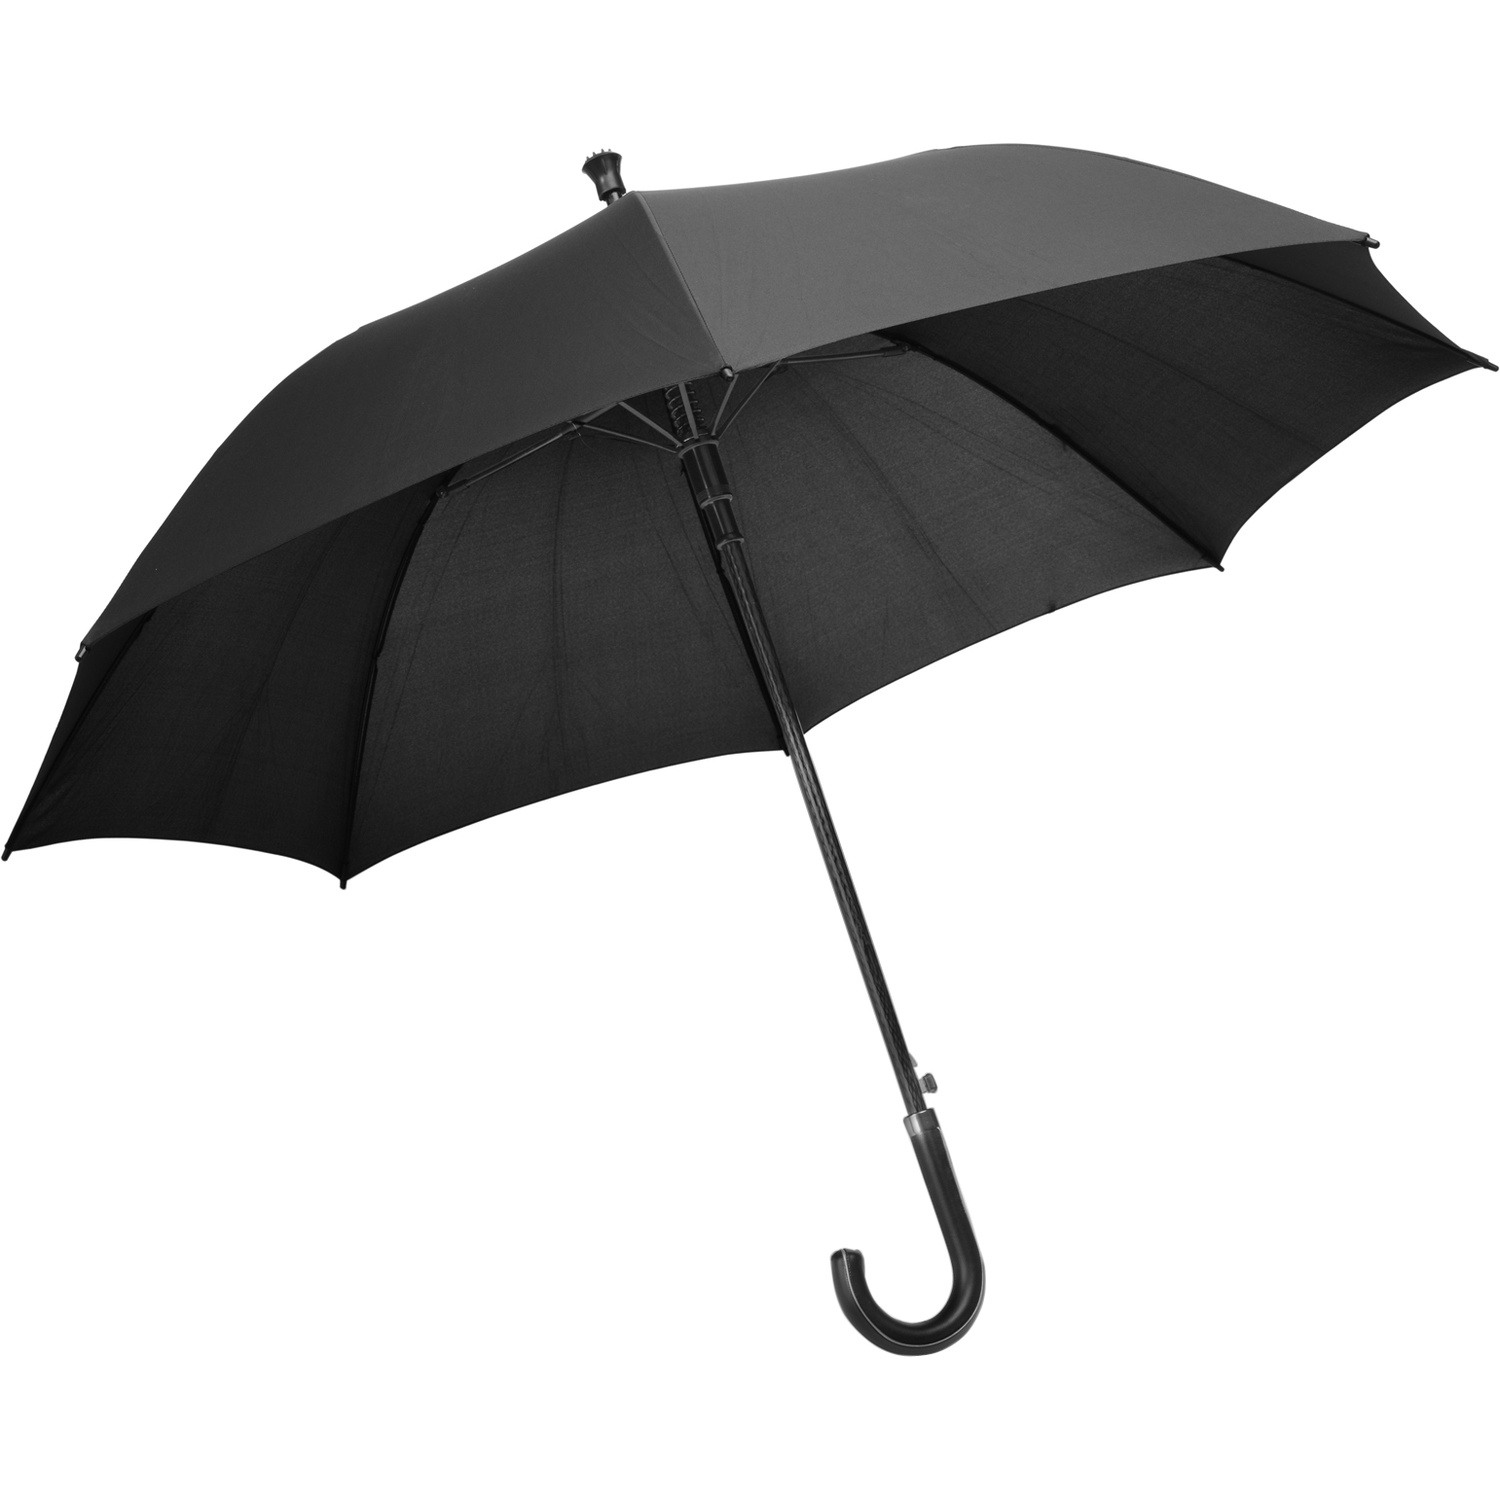 004119 001999999 3d135 ins pro01 fal - Nylon umbrella